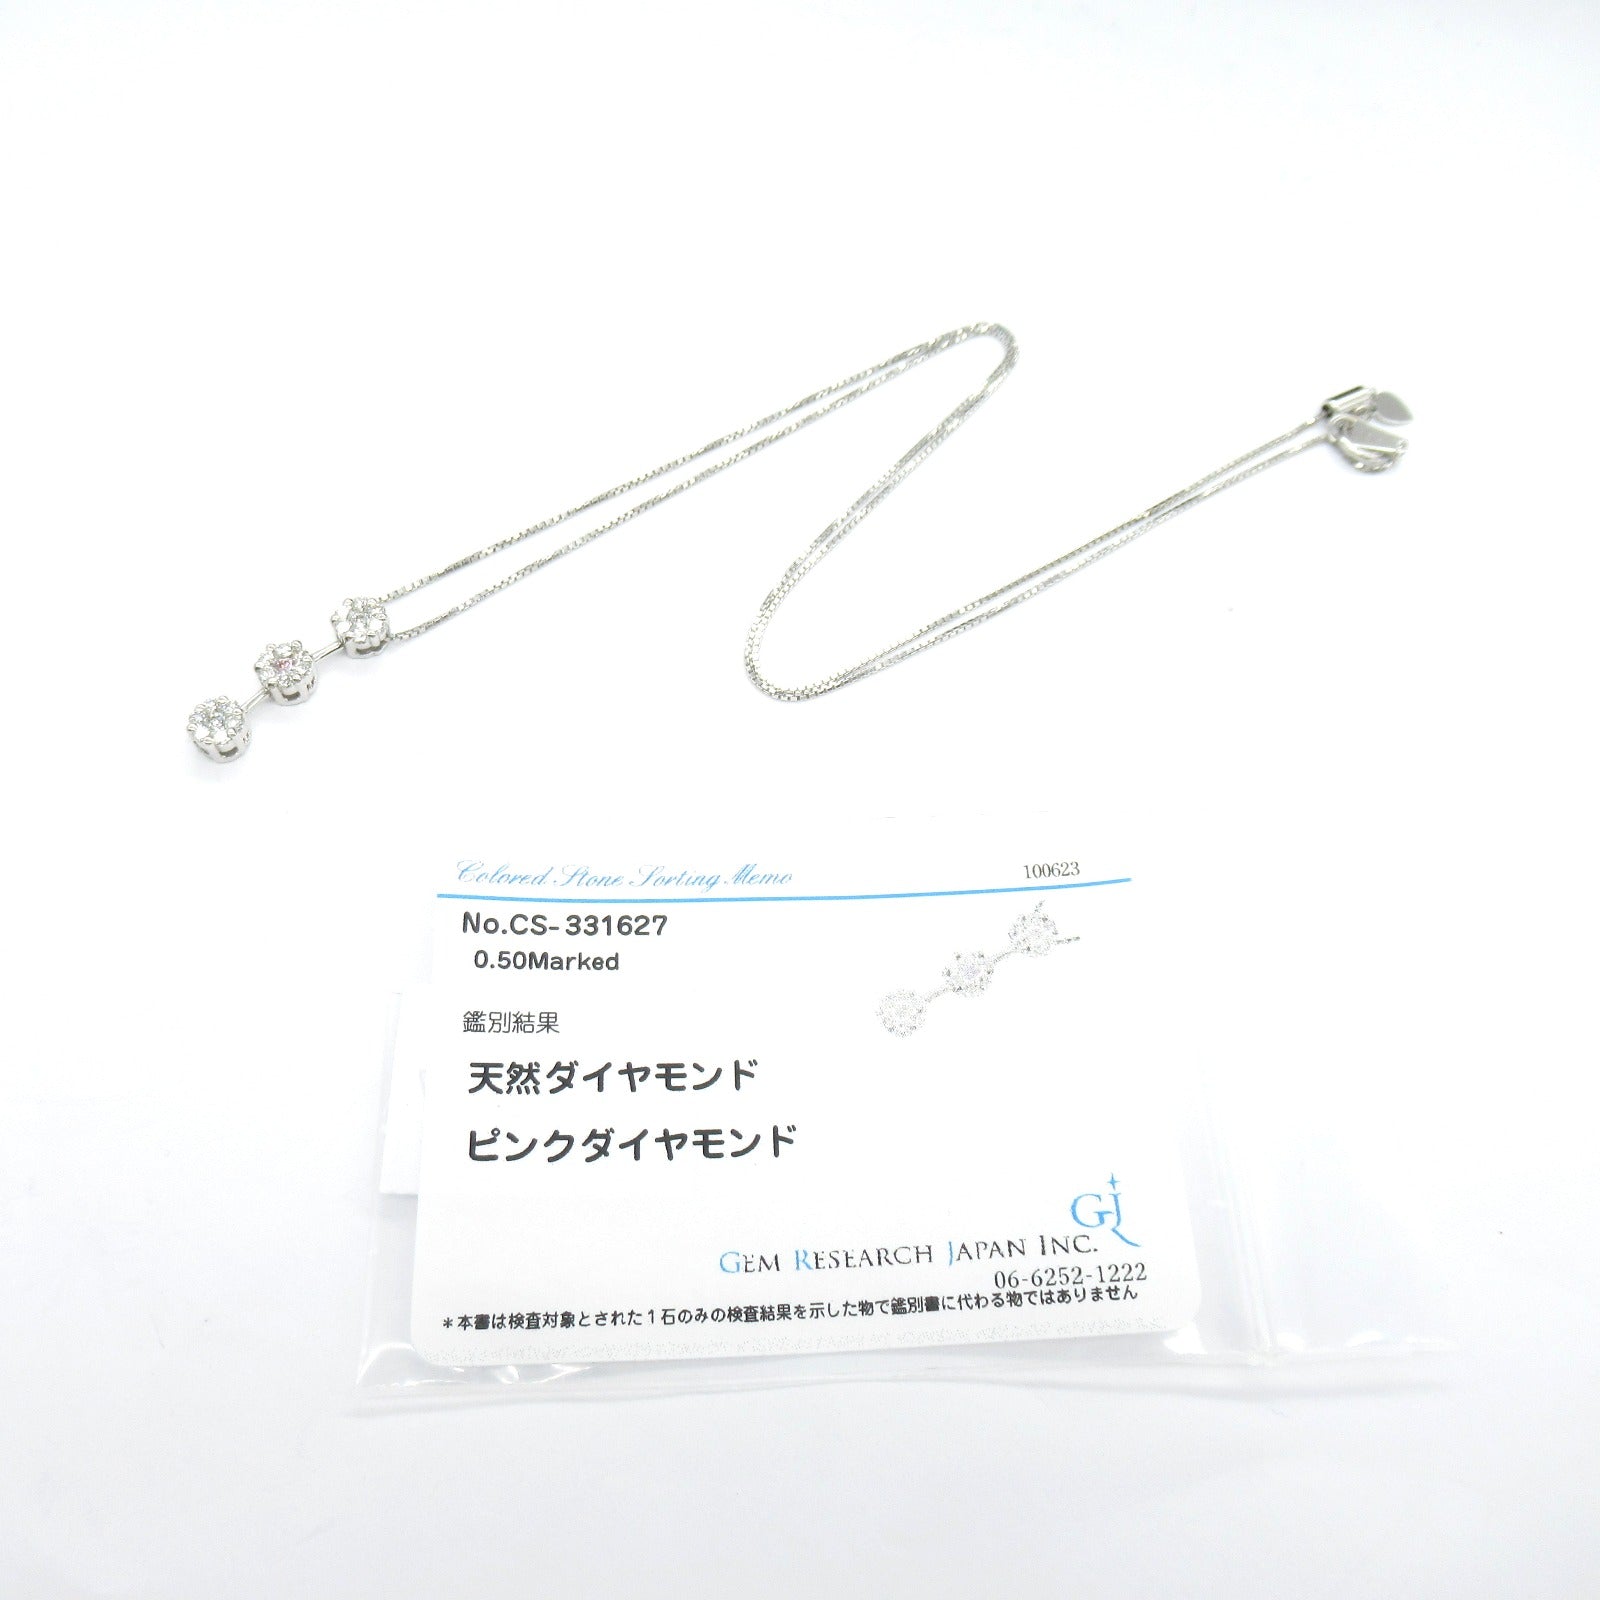 Jewelry Diamond Jewelry K18WG (White G) Diamond  Pink / Clear Diamond 4.0g